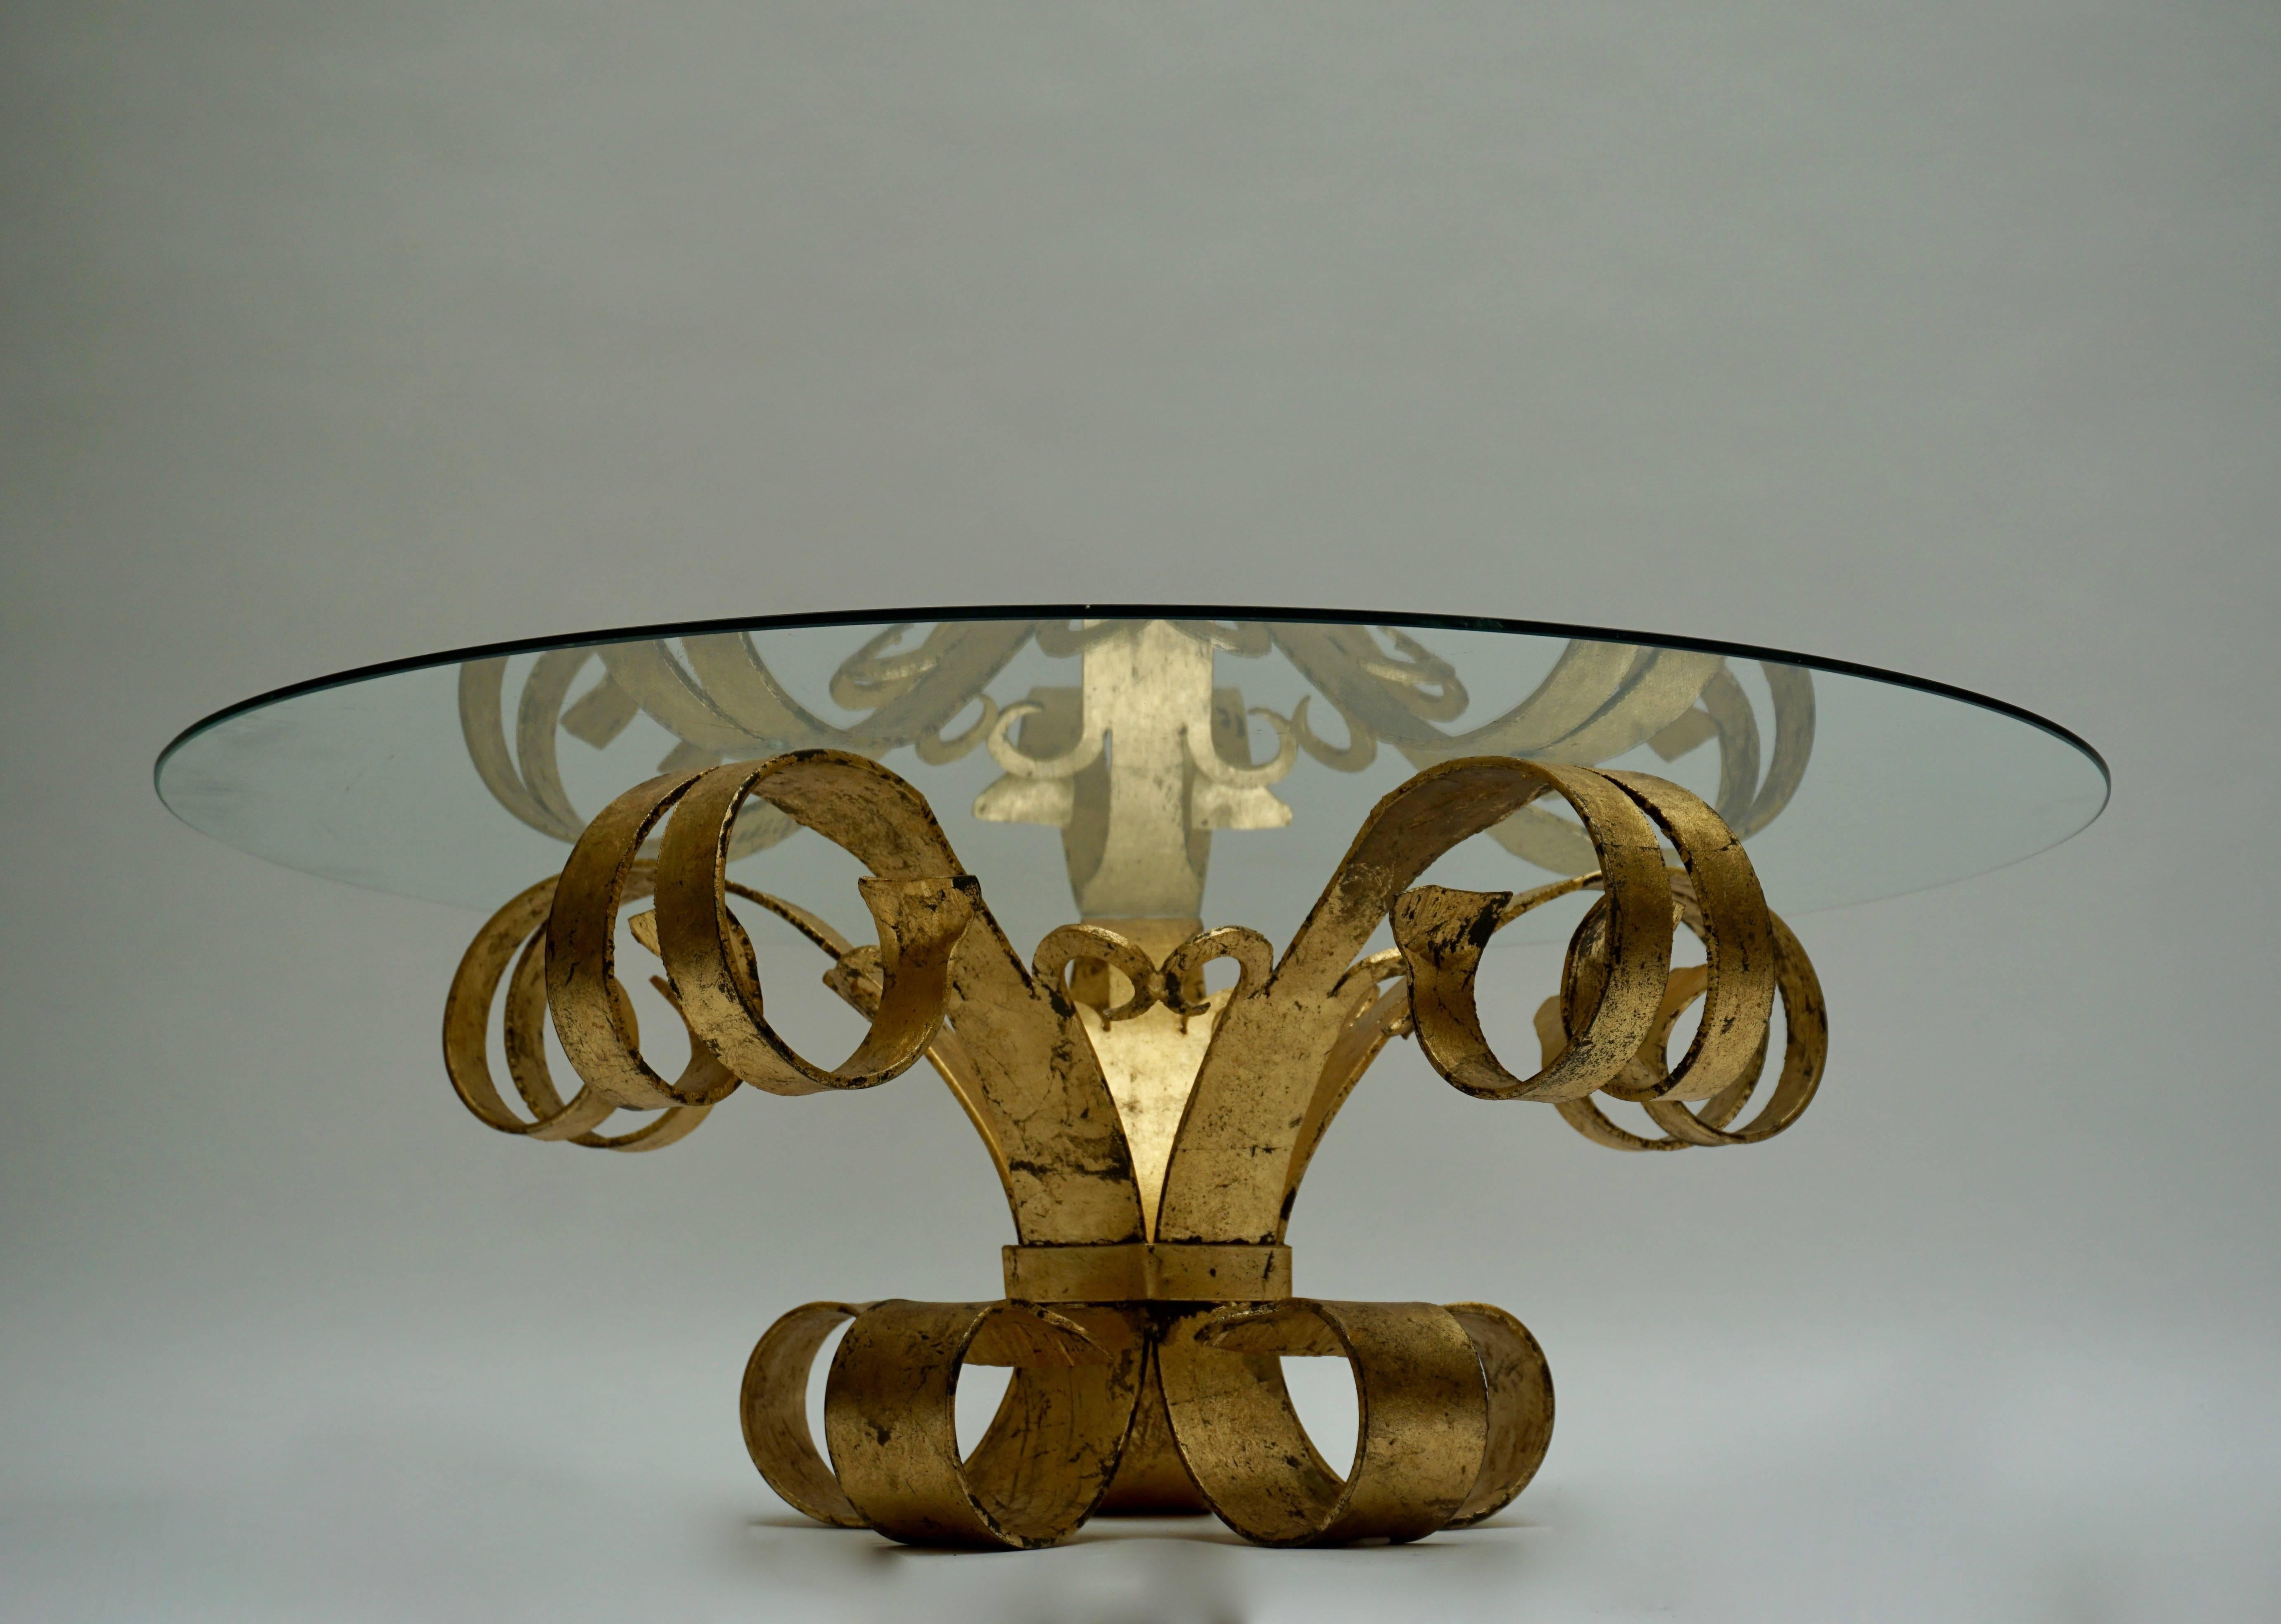 Élégante table basse italienne dorée avec plateau en verre.
Diamètre avec plateau en verre : 105 cm.
Hauteur : 39 cm.
Diamètre de la base : 60 cm.